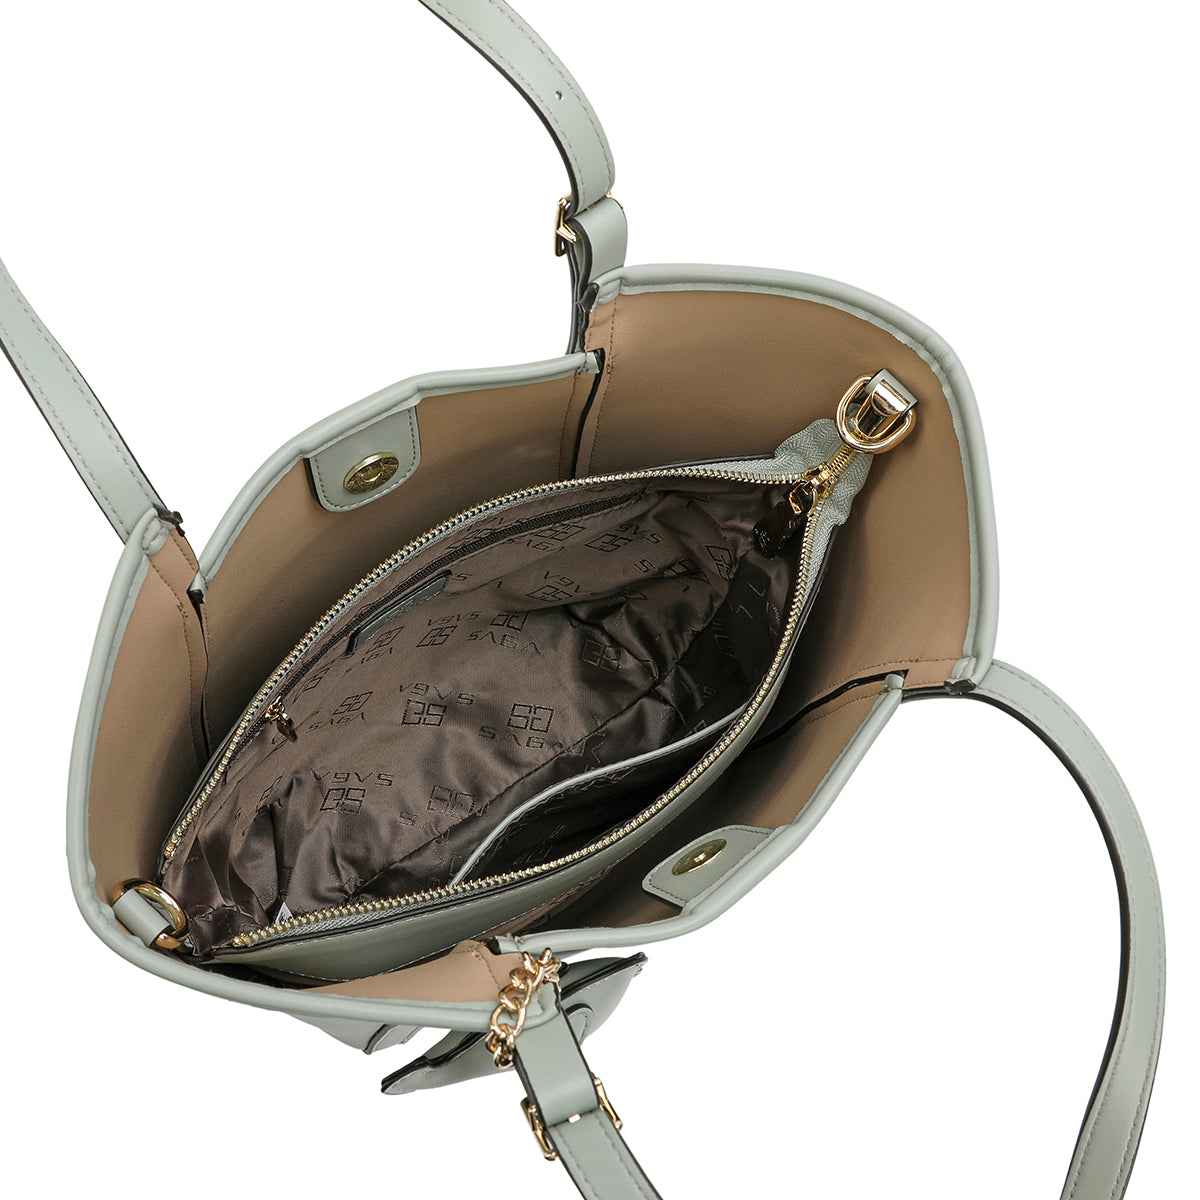 حقيبة يد واسعة بتصميم كلاسيكي مميز متوفرة بلونين